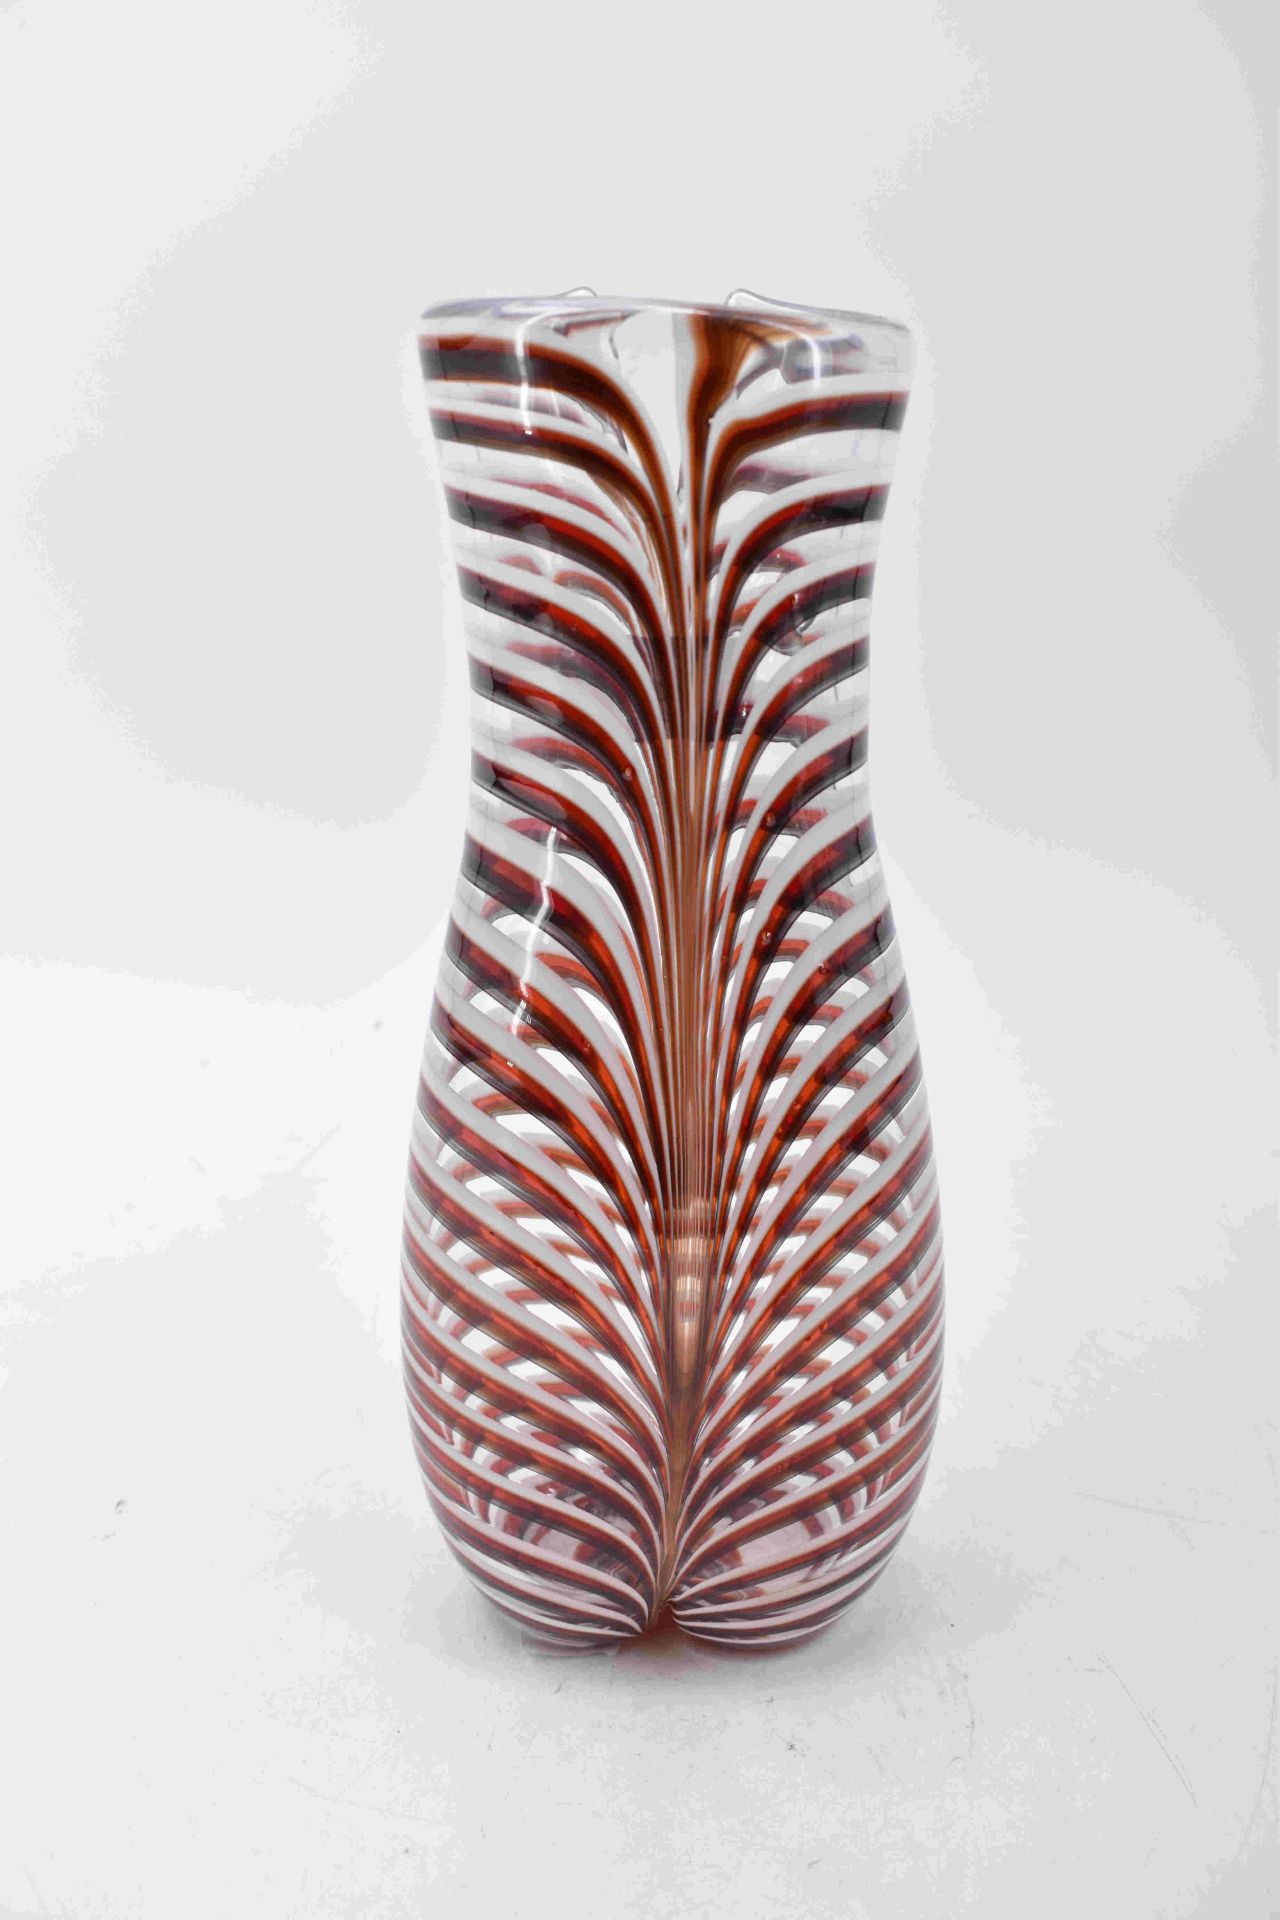 Bianconi, Fulvio: Vase "Bikini" - Image 9 of 10